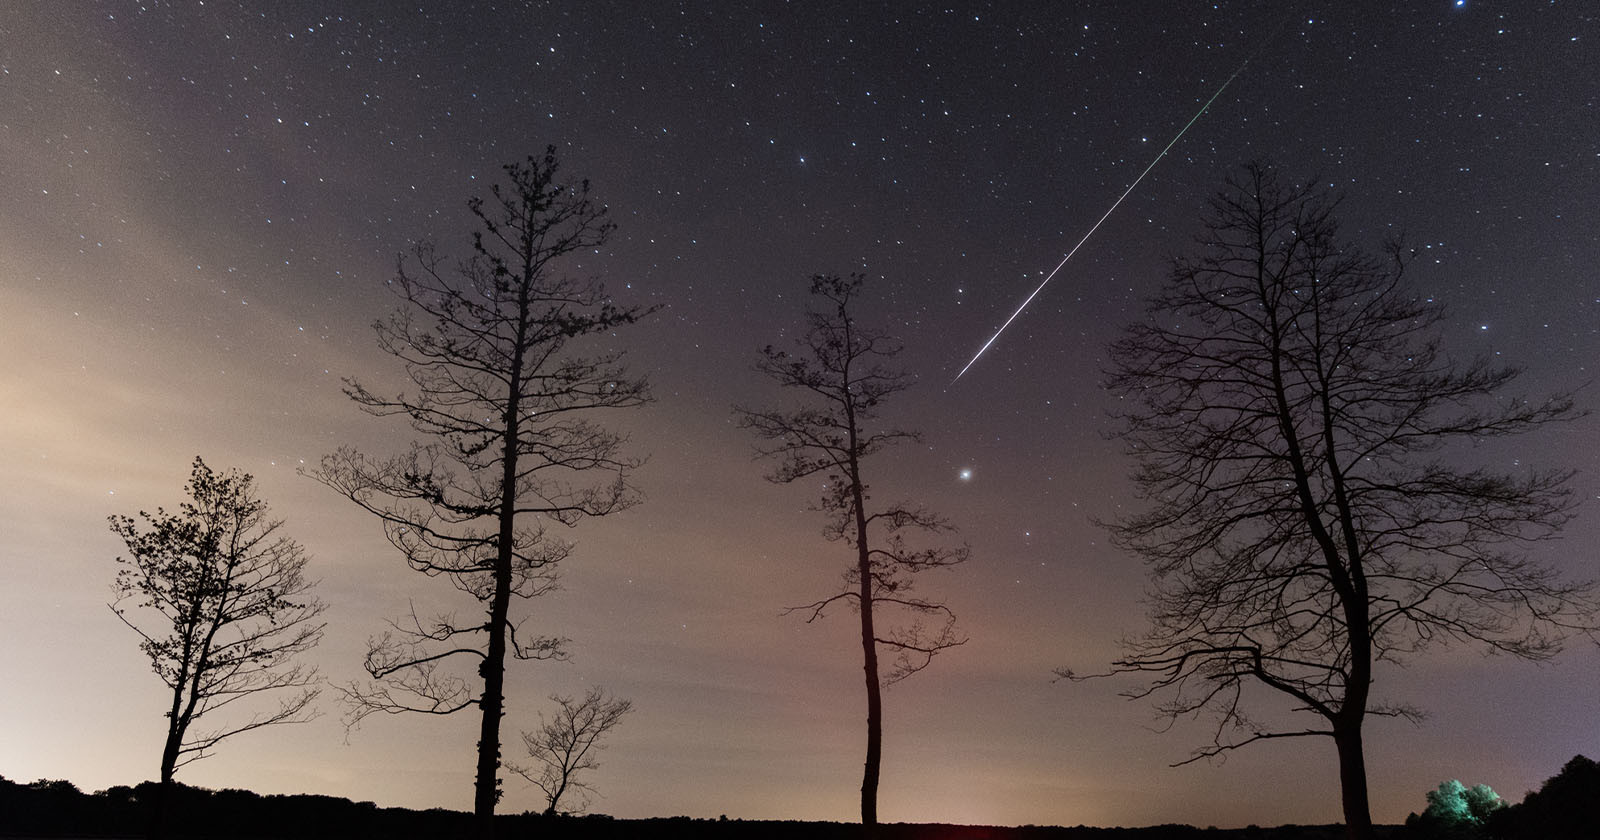 Doorbell Camera Captures Giant Meteor Streaking Across Alaskan Sky